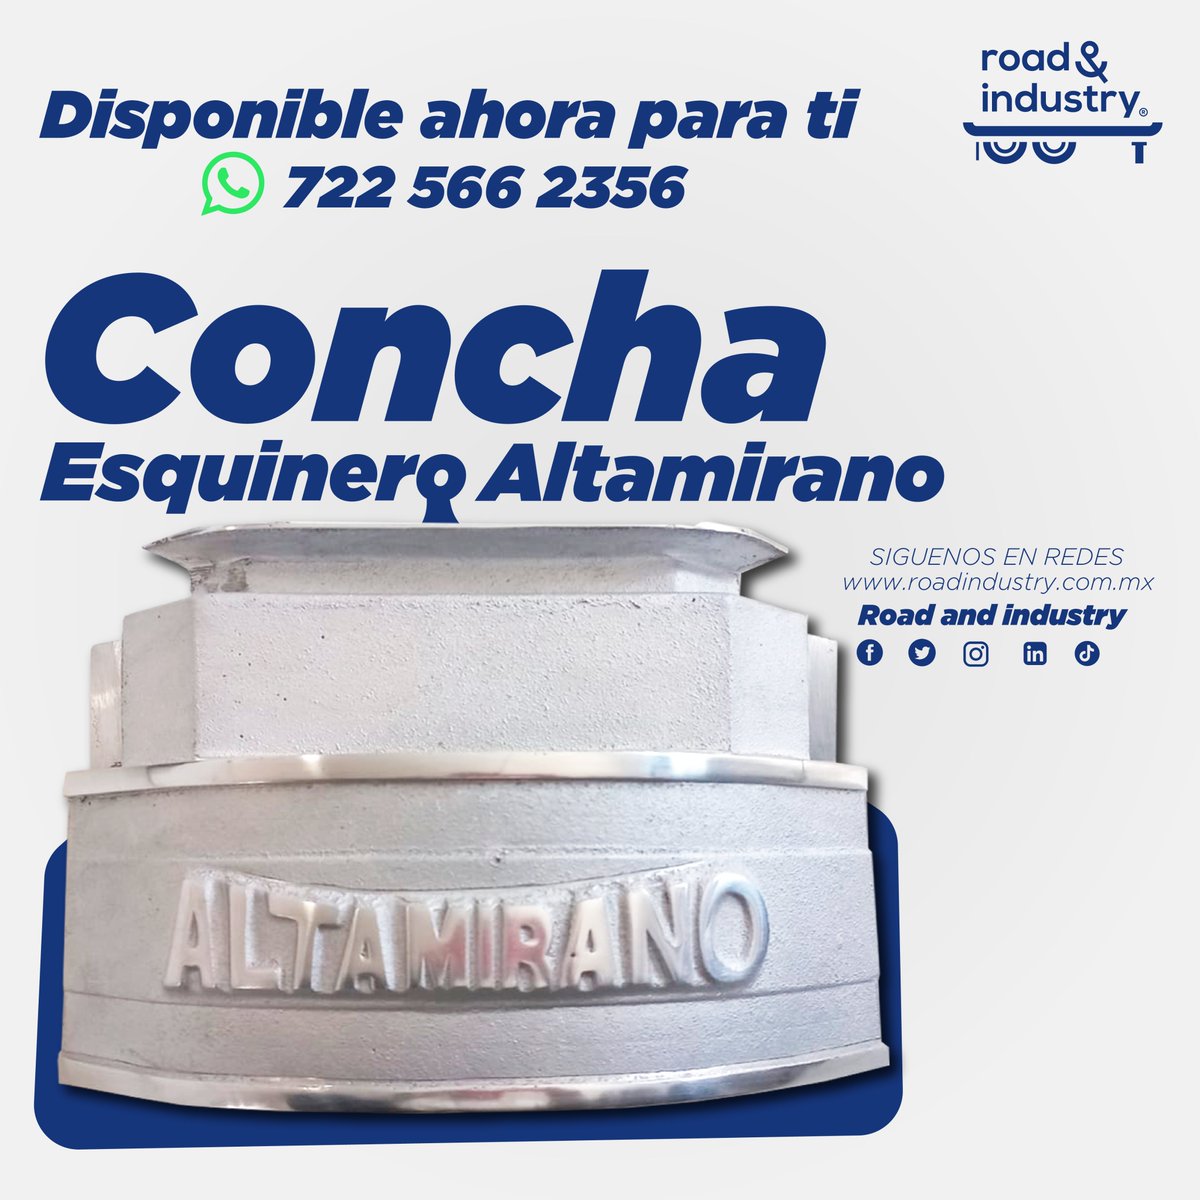 ¡No pierdas más tiempo buscando! Este esquinero de aluminio de la marca Altamirano es la refacción perfecta para tu caja seca. Obtén más resistencia y durabilidad en tus transportes. ¡Cotiza con nosotros ahora!

#RoadIndustry #transportedecarga #refacciones #remolques